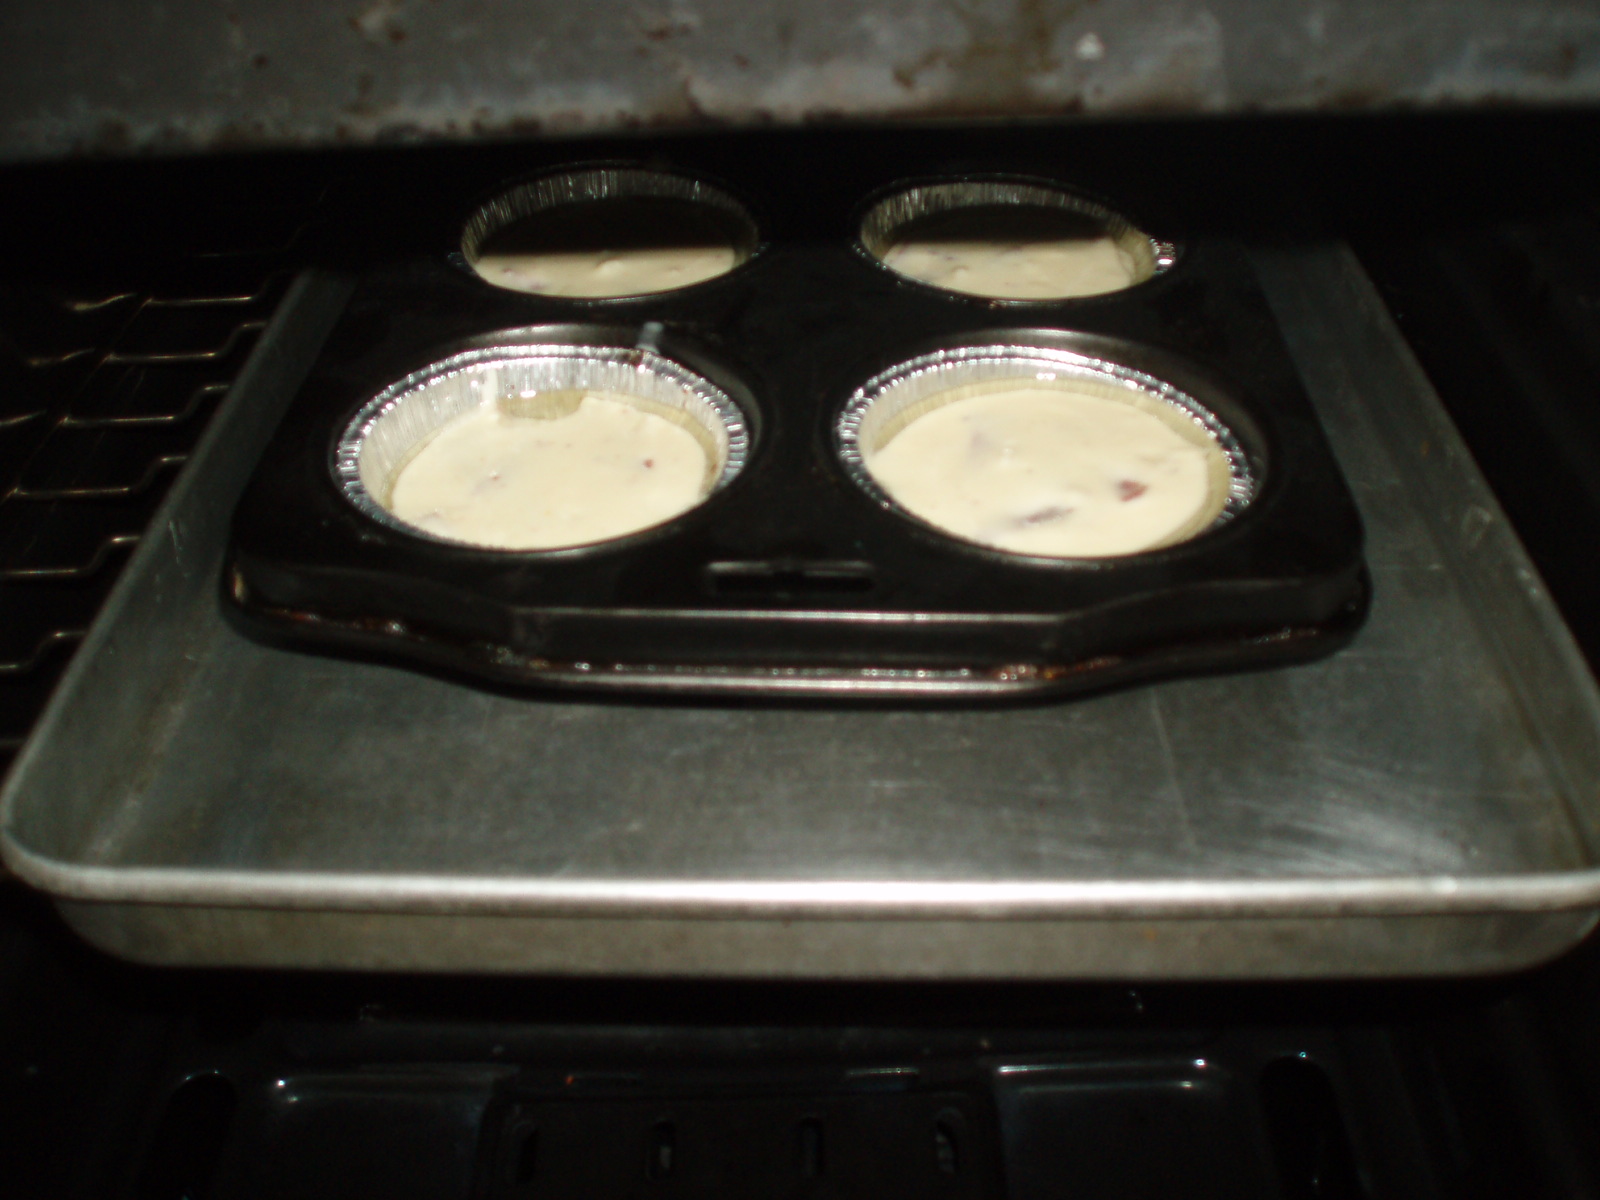 Muffins sarate 